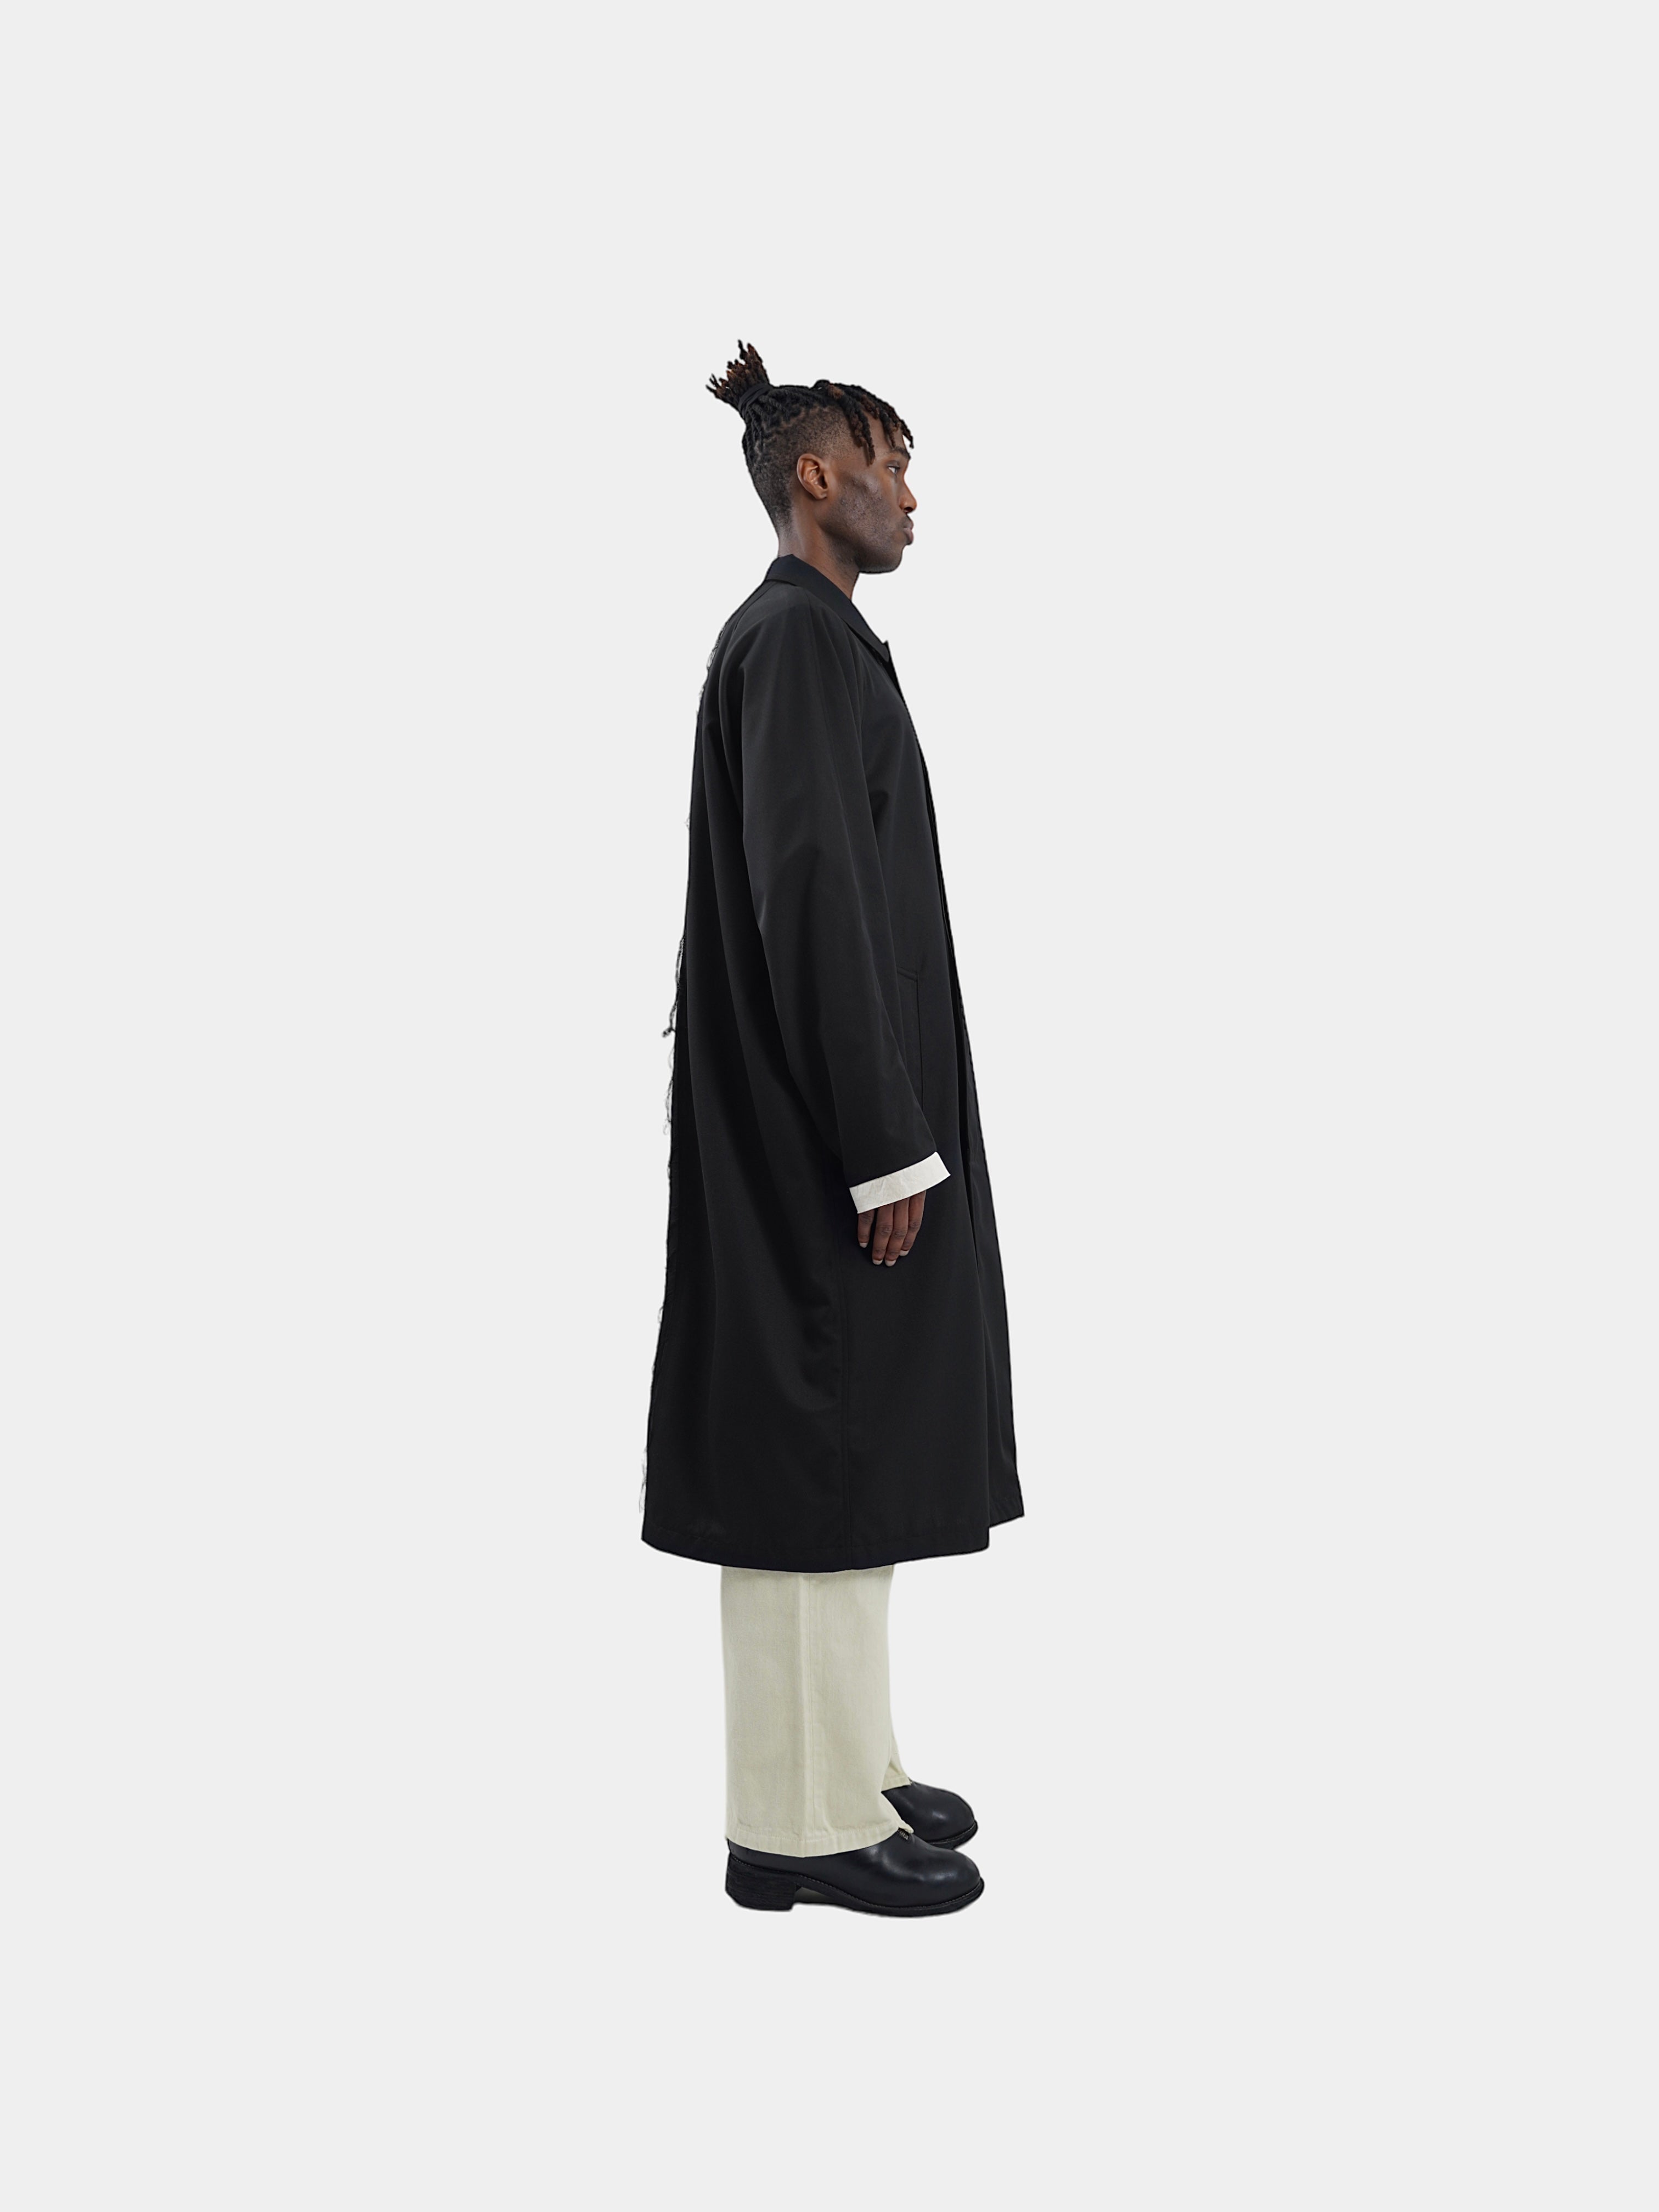 The “Lien” Virgin Wool Coat in matte black